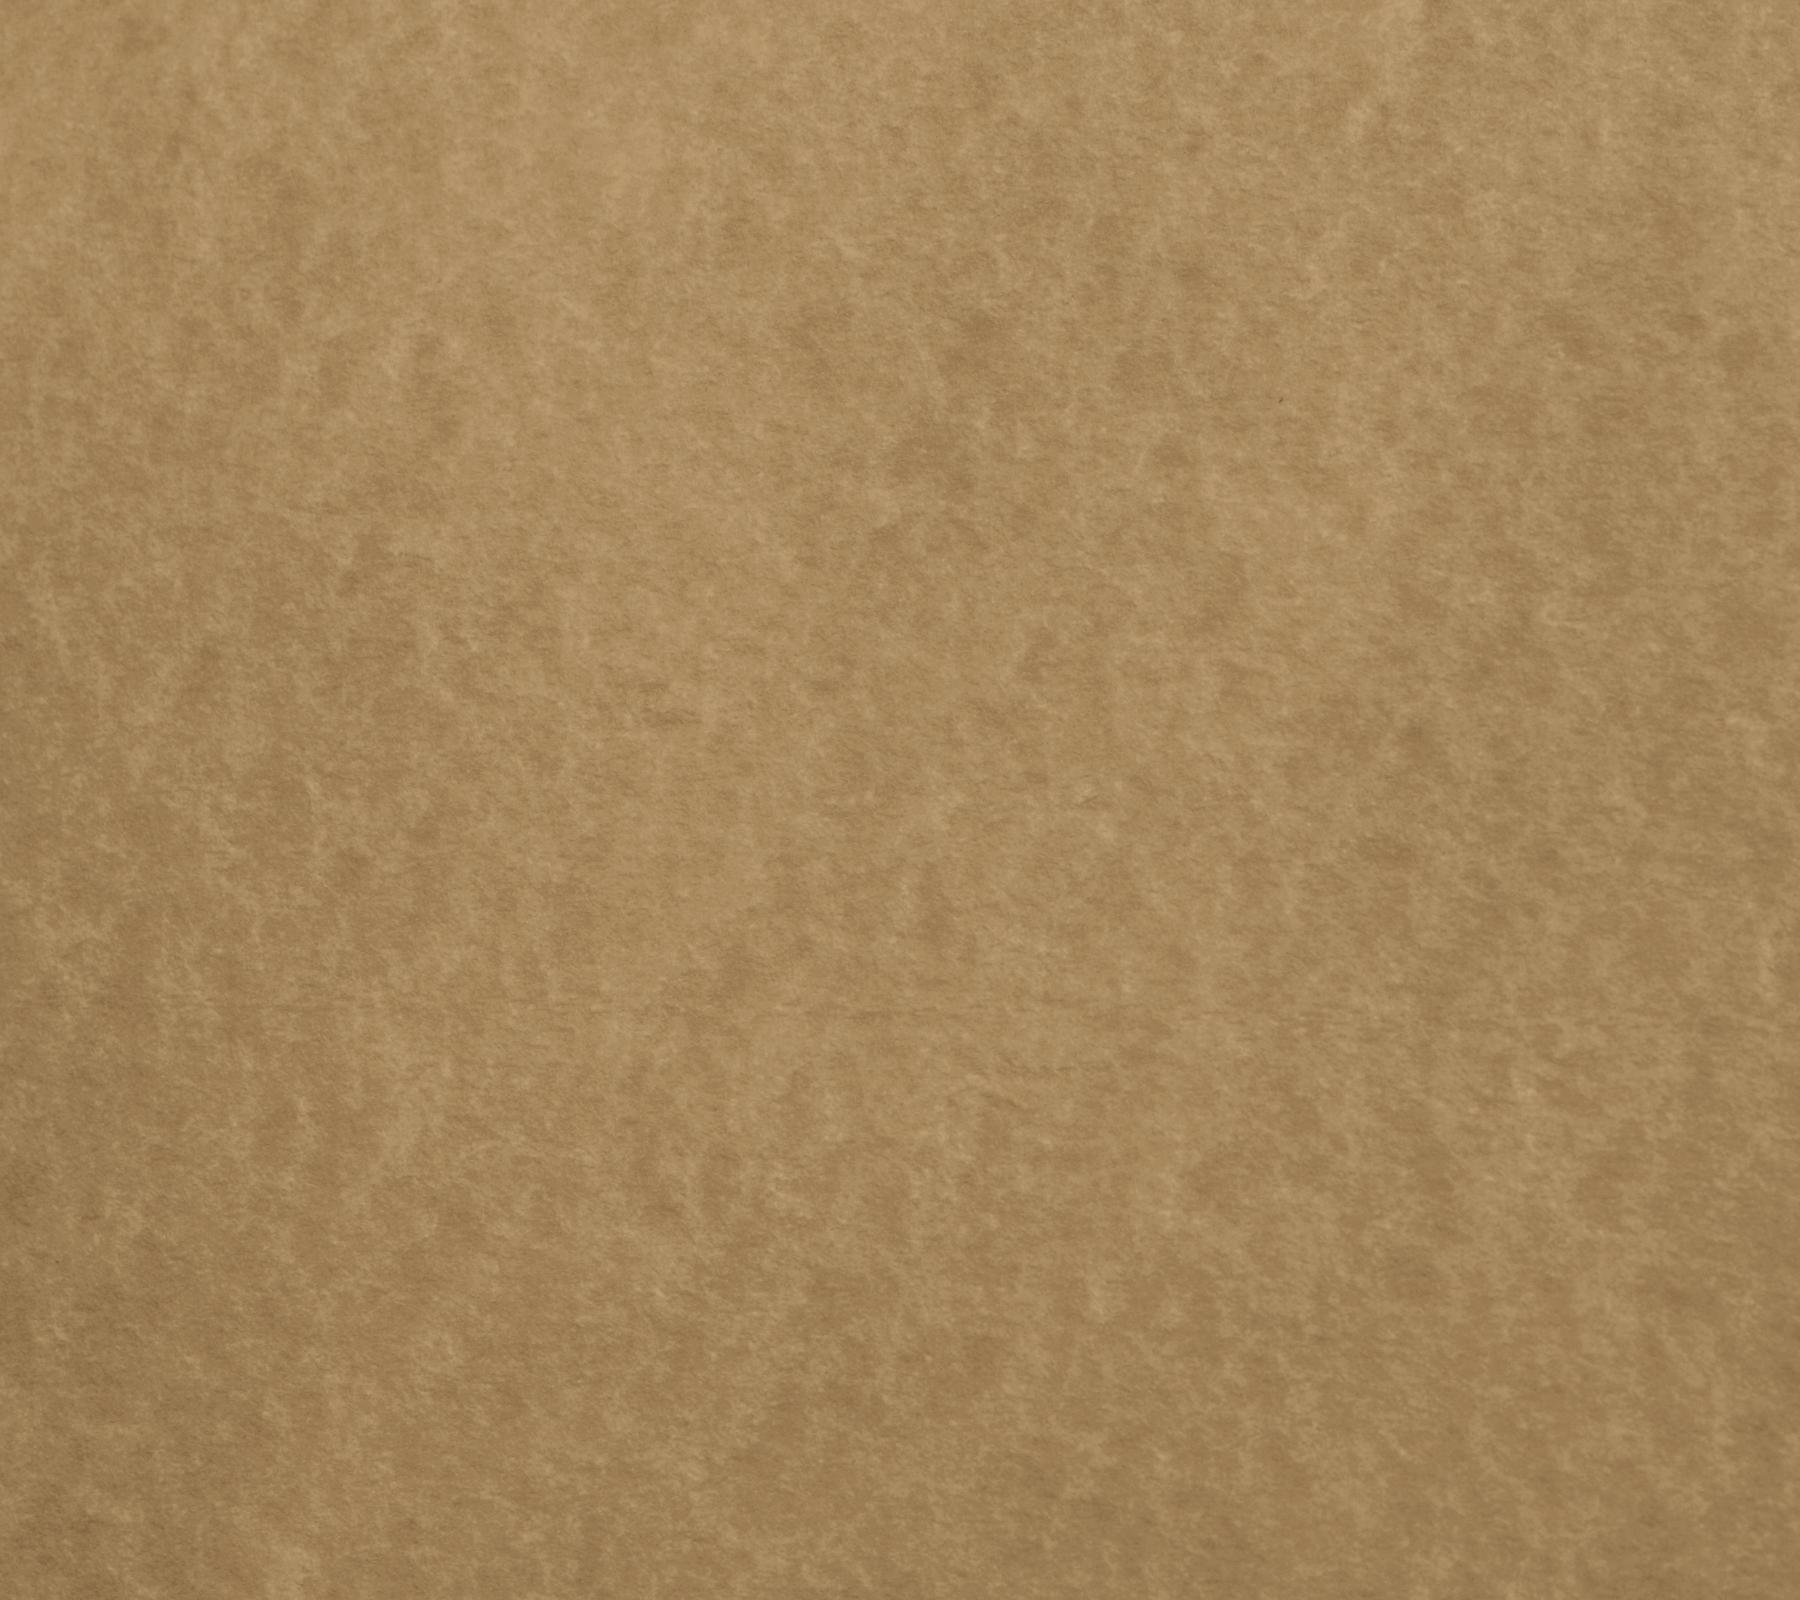 Tan Parchment Paper Background Image Wallpaper